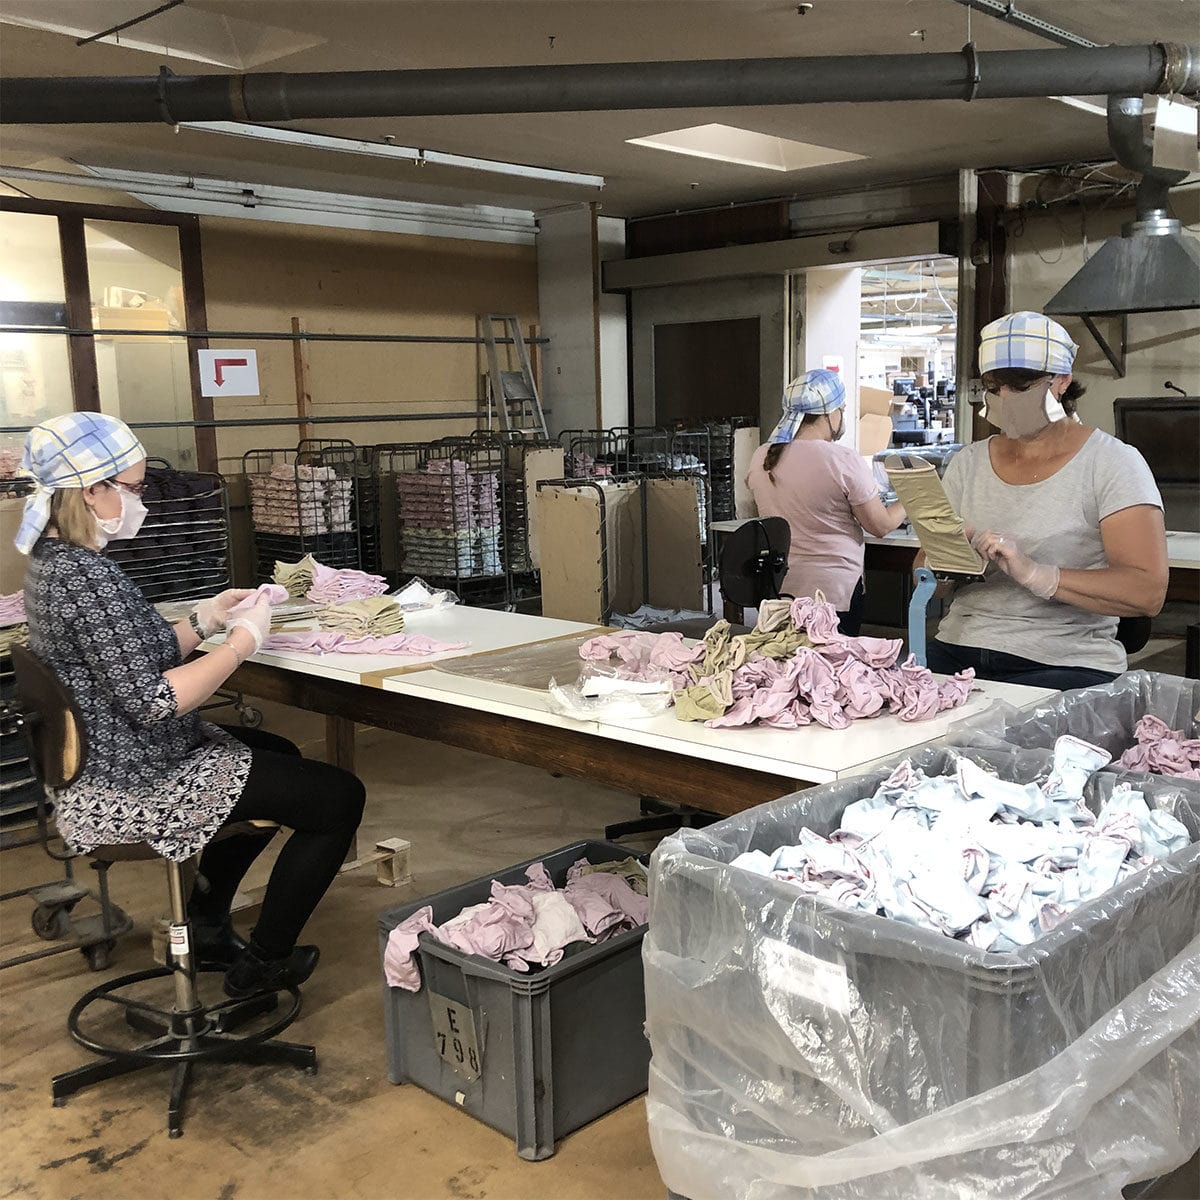 Lancée dans la production de masques, l’entreprise alsacienne Labonal attend des commandes des collectivités locales